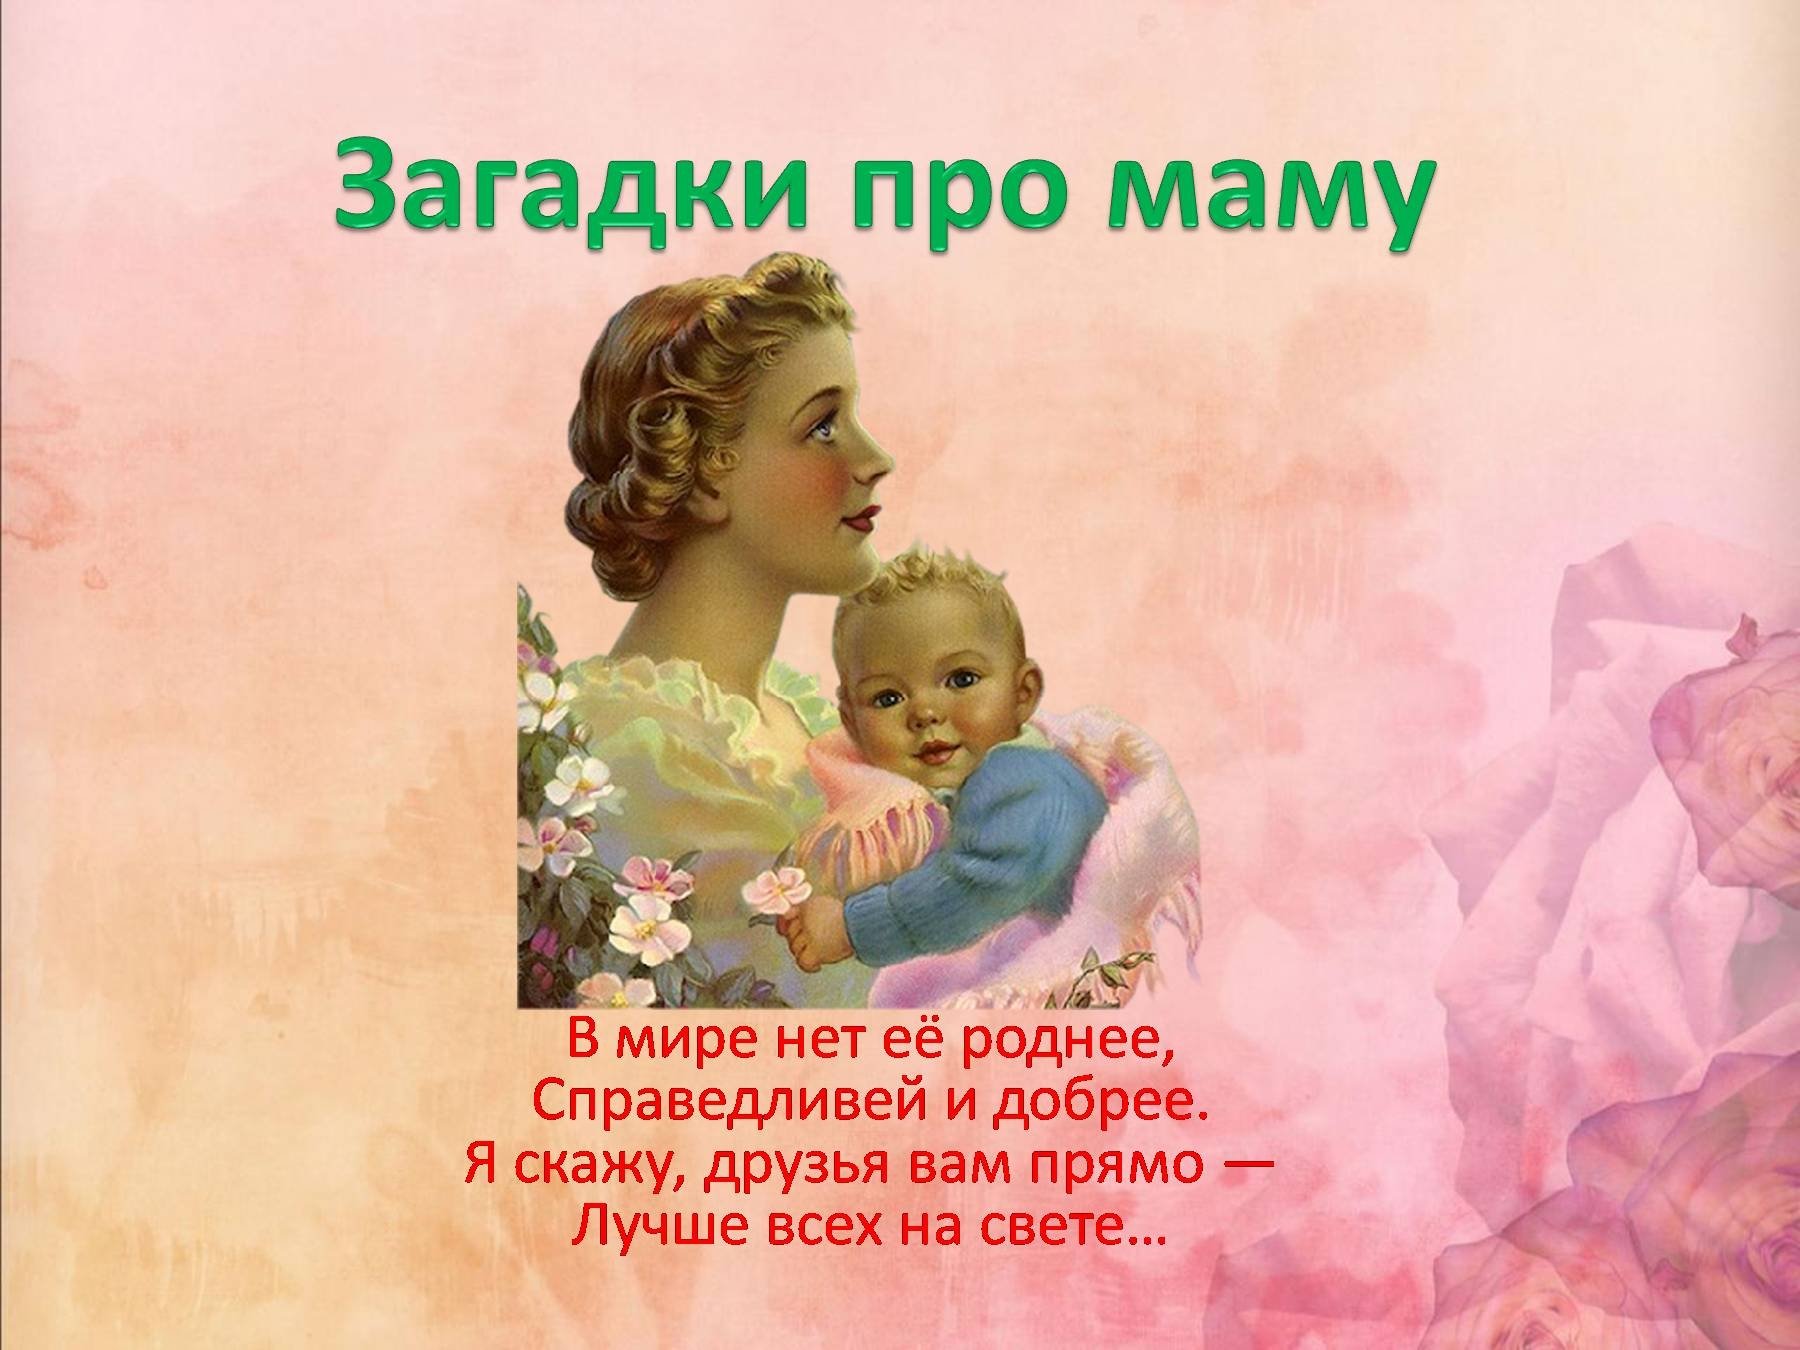 Трогательно о маме короткие. Маленький стих для мамы. Стихотворение ко Дню матери трогательные. Стихи про маму на день матери короткие. Красивый стих про маму.